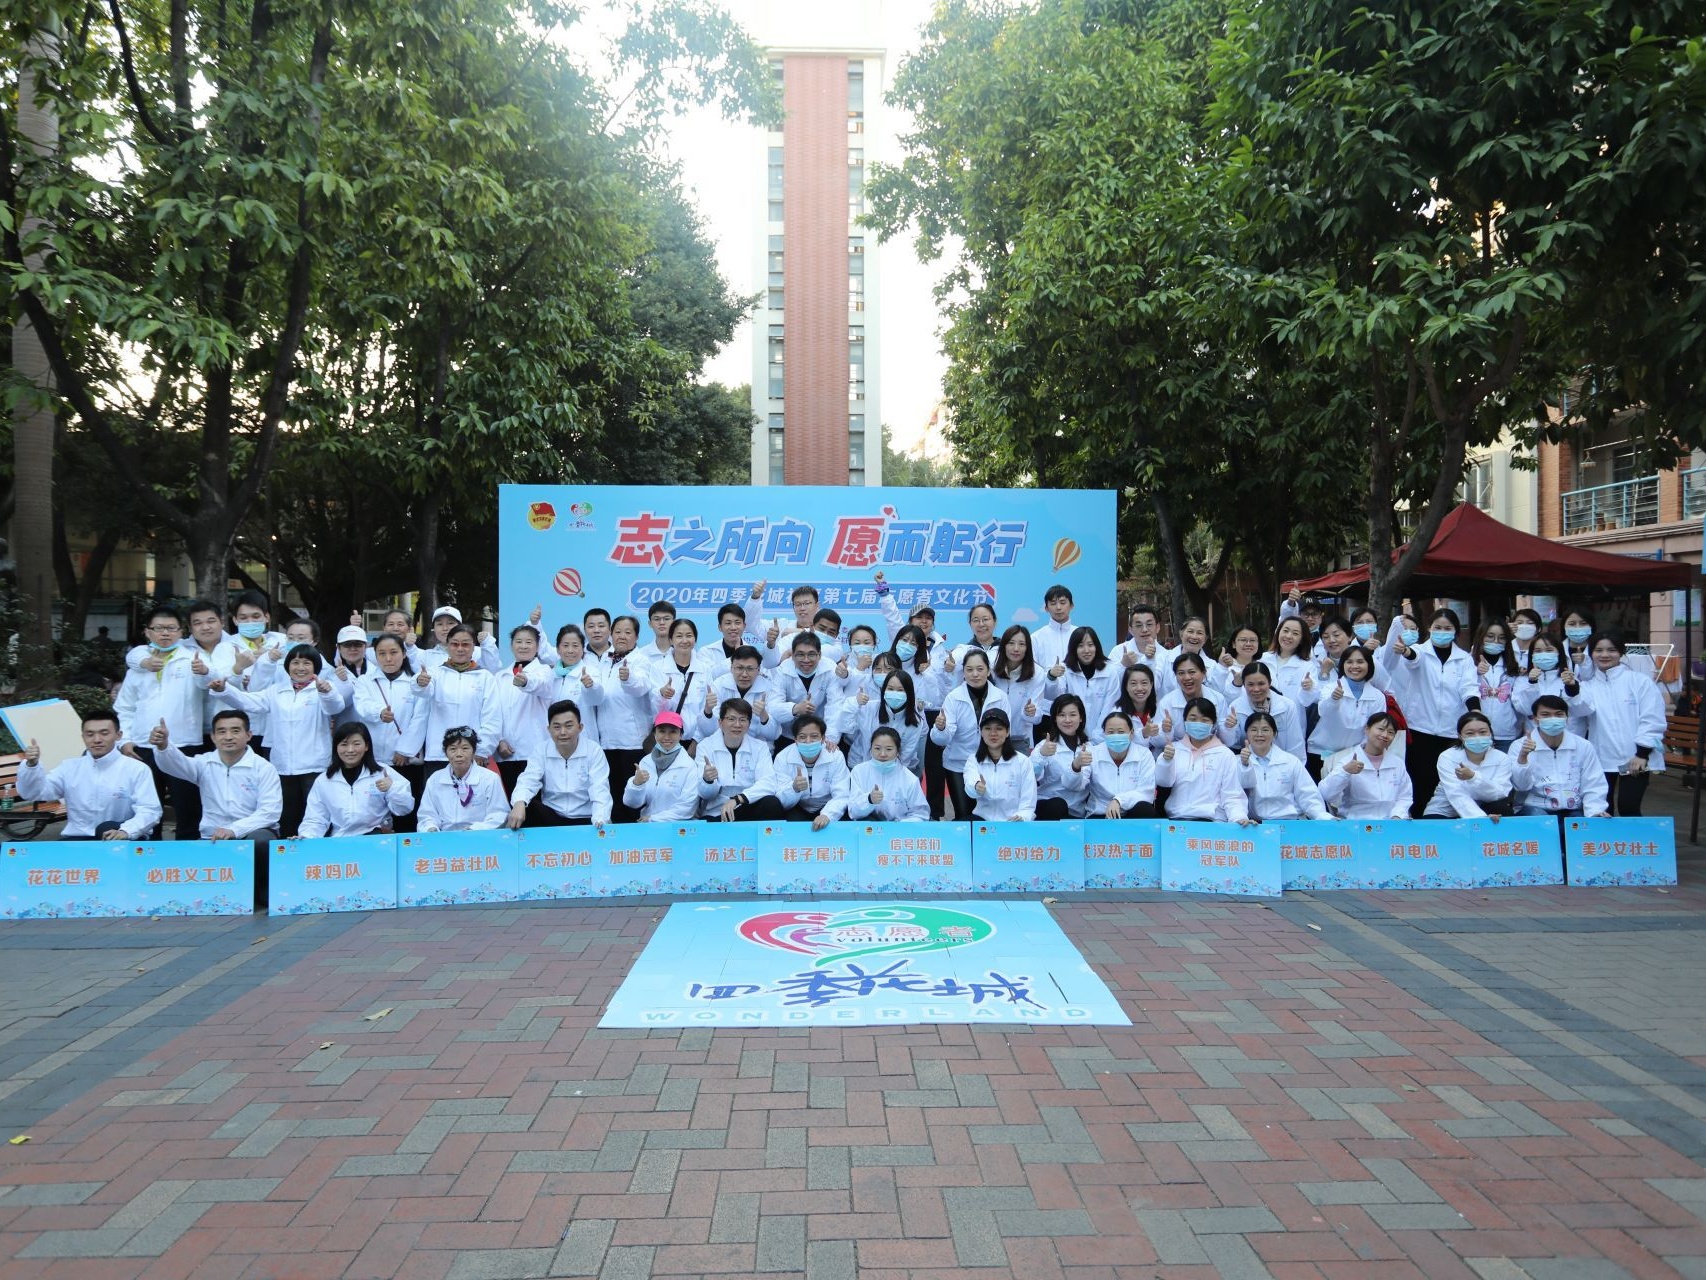 一个社区拥有2400多名志愿者 四季花城举办第七届志愿者文化节